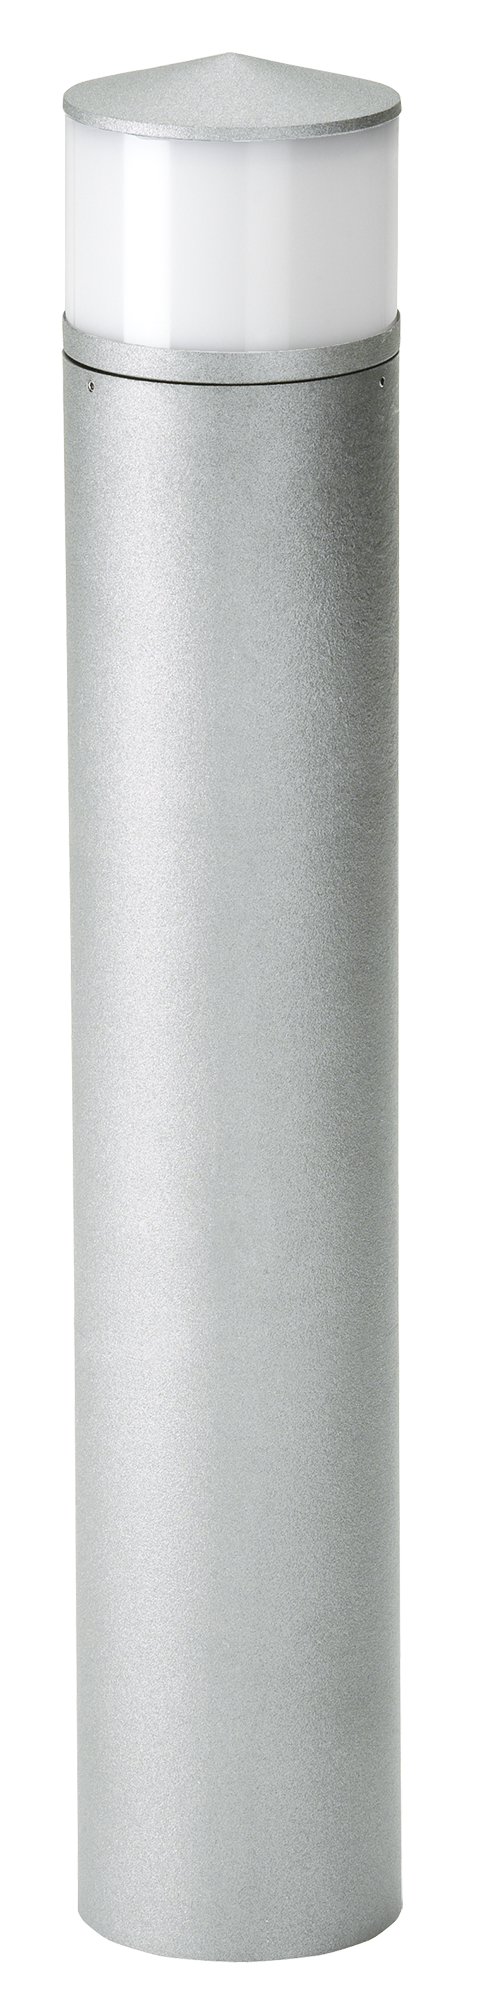 Bodenleuchten, Pollerleuchten, Kandelaber & Bodenlampen für außen von Albert Leuchten Pollerleuchte Typ Nr. 2240 692240